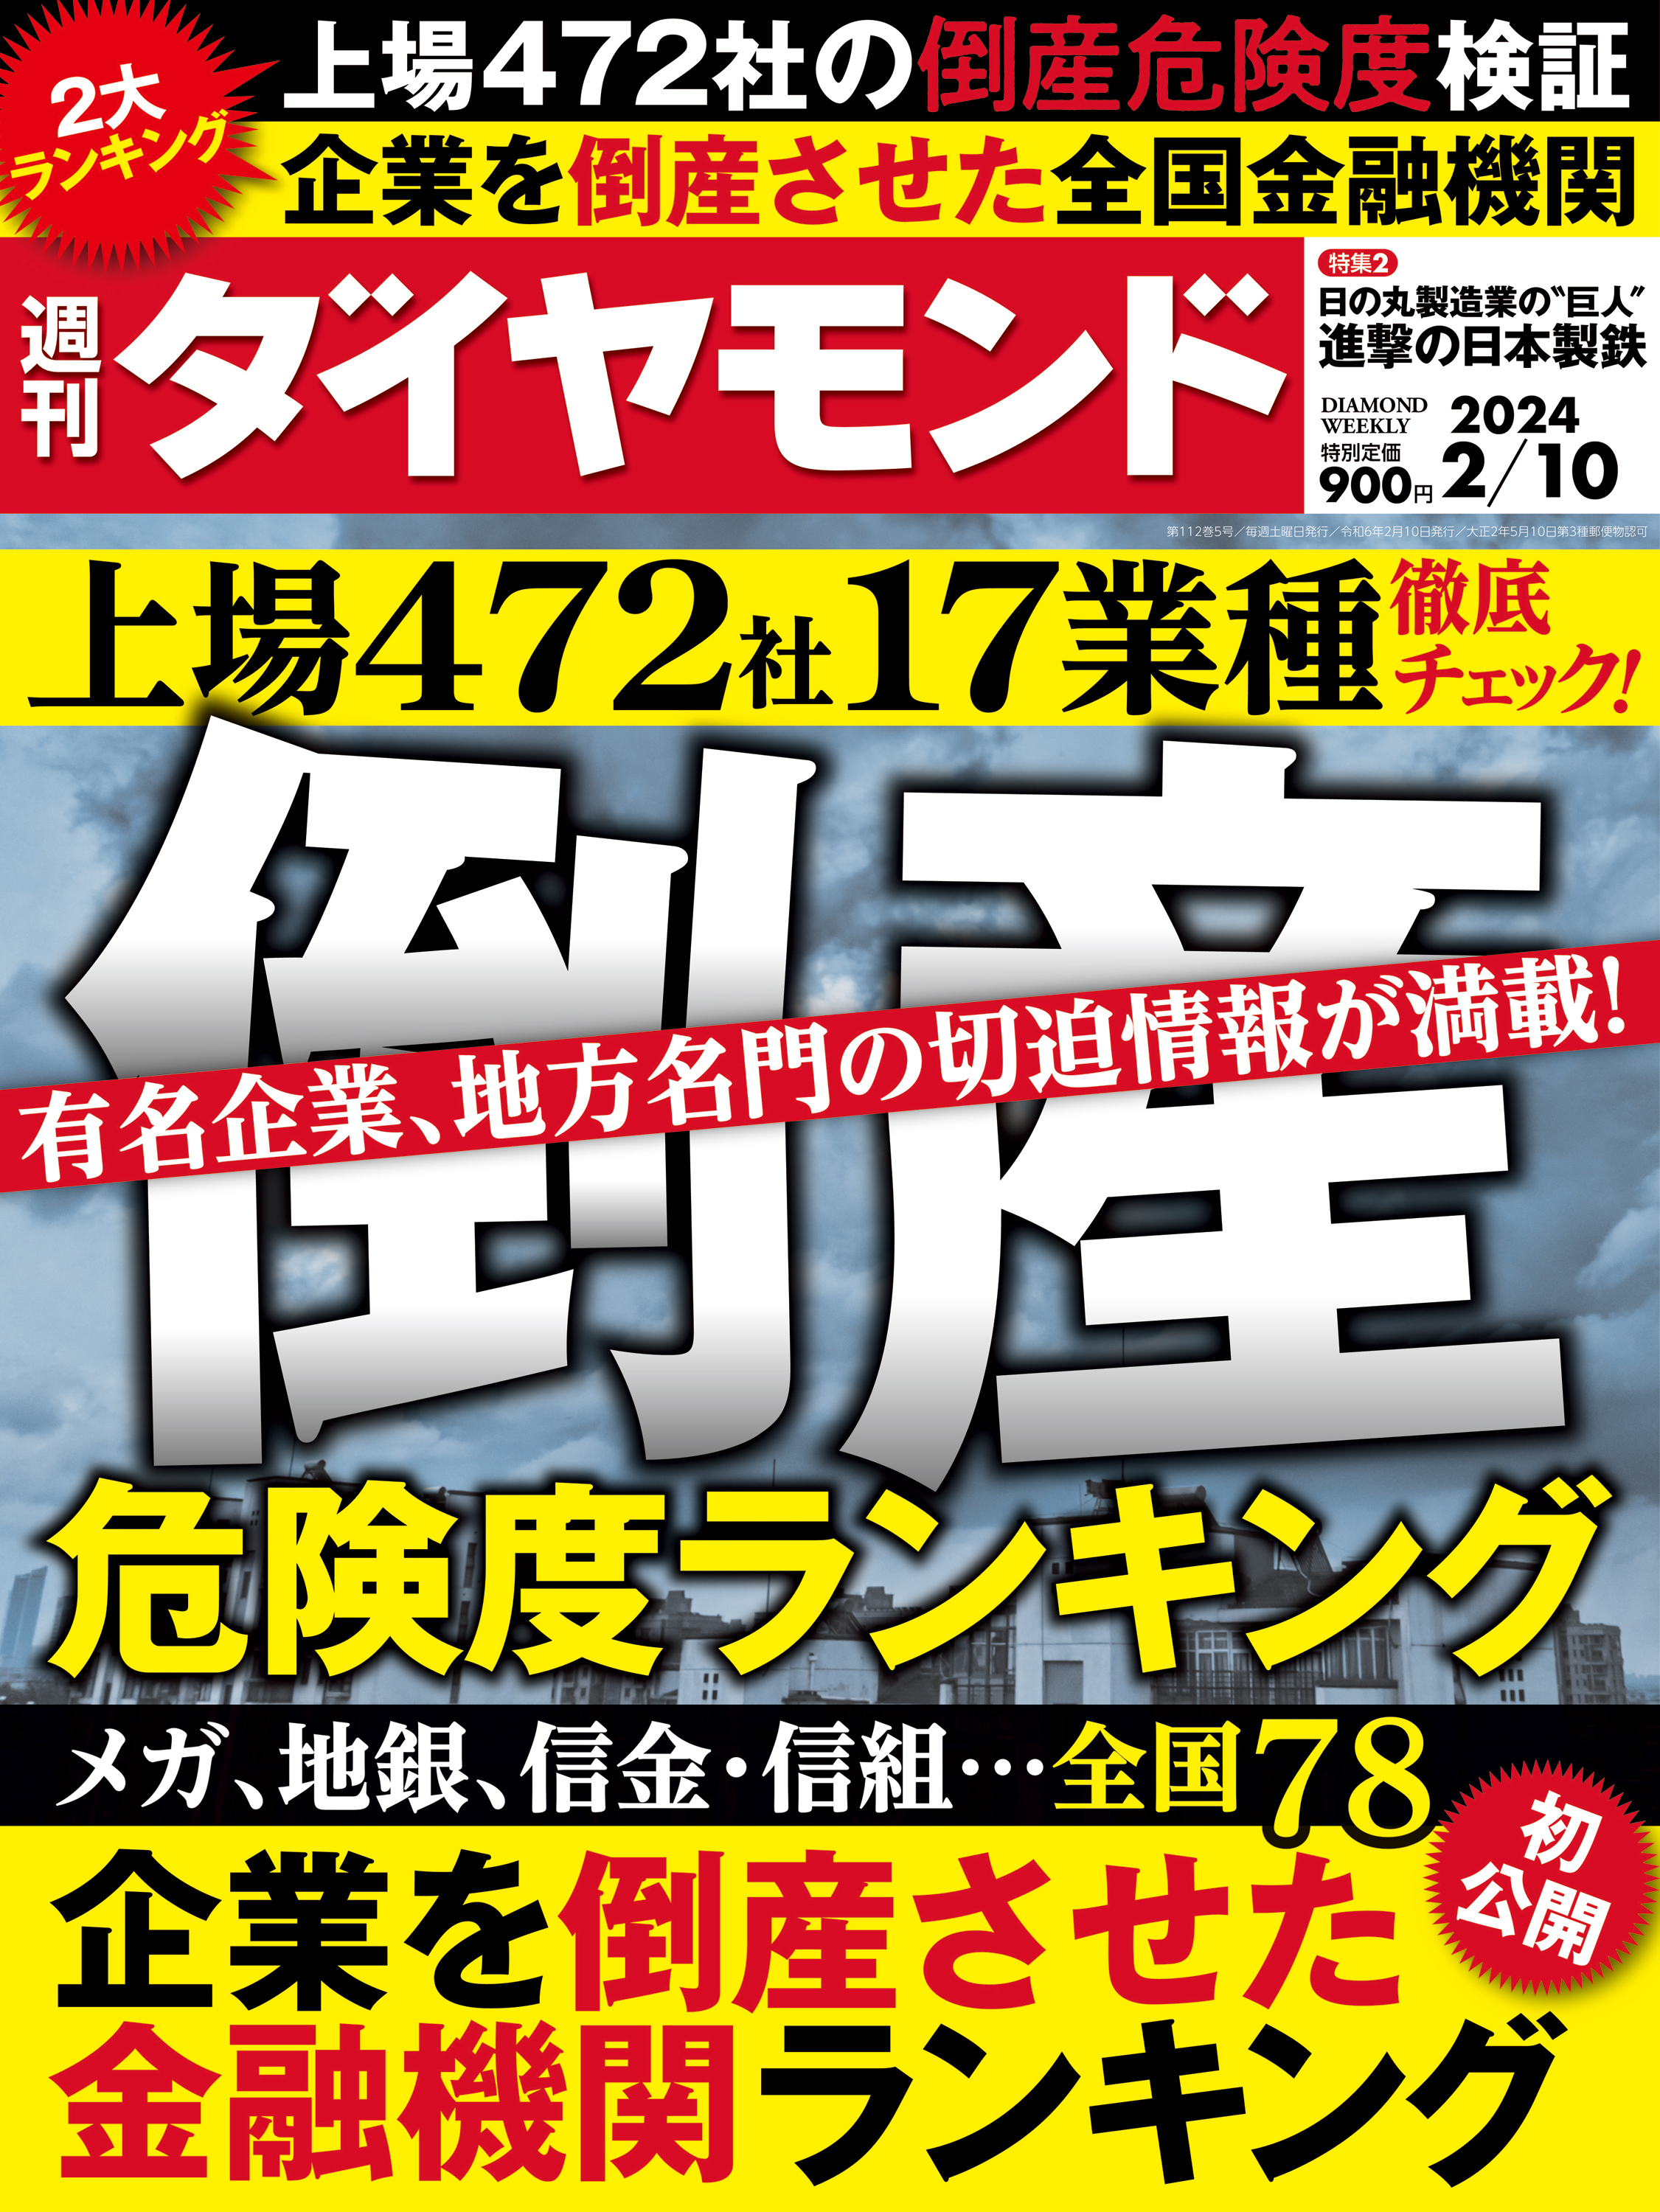 倒産危険度ランキング2024(週刊ダイヤモンド 2024年2/10号) | ブックライブ